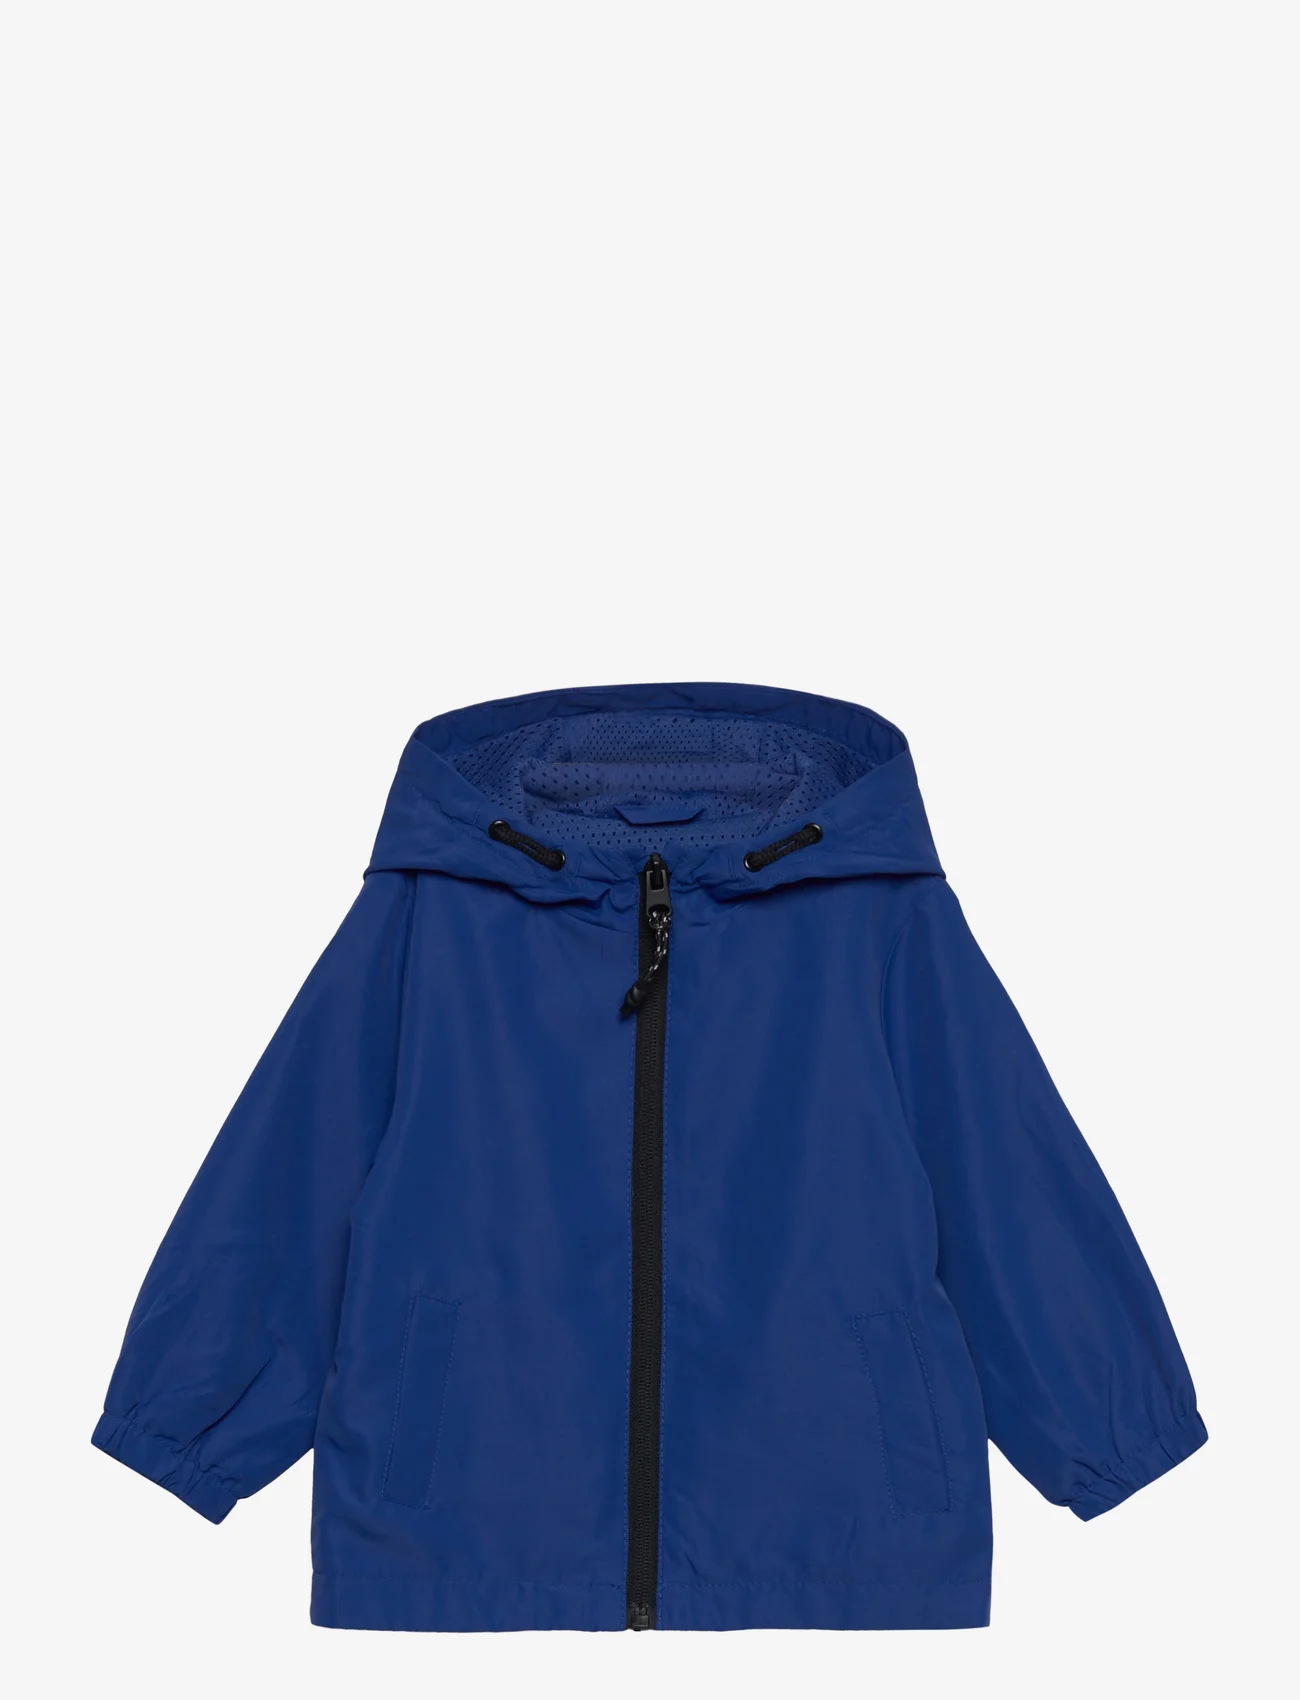 Mango - Hooded jacket - bright blue - 0